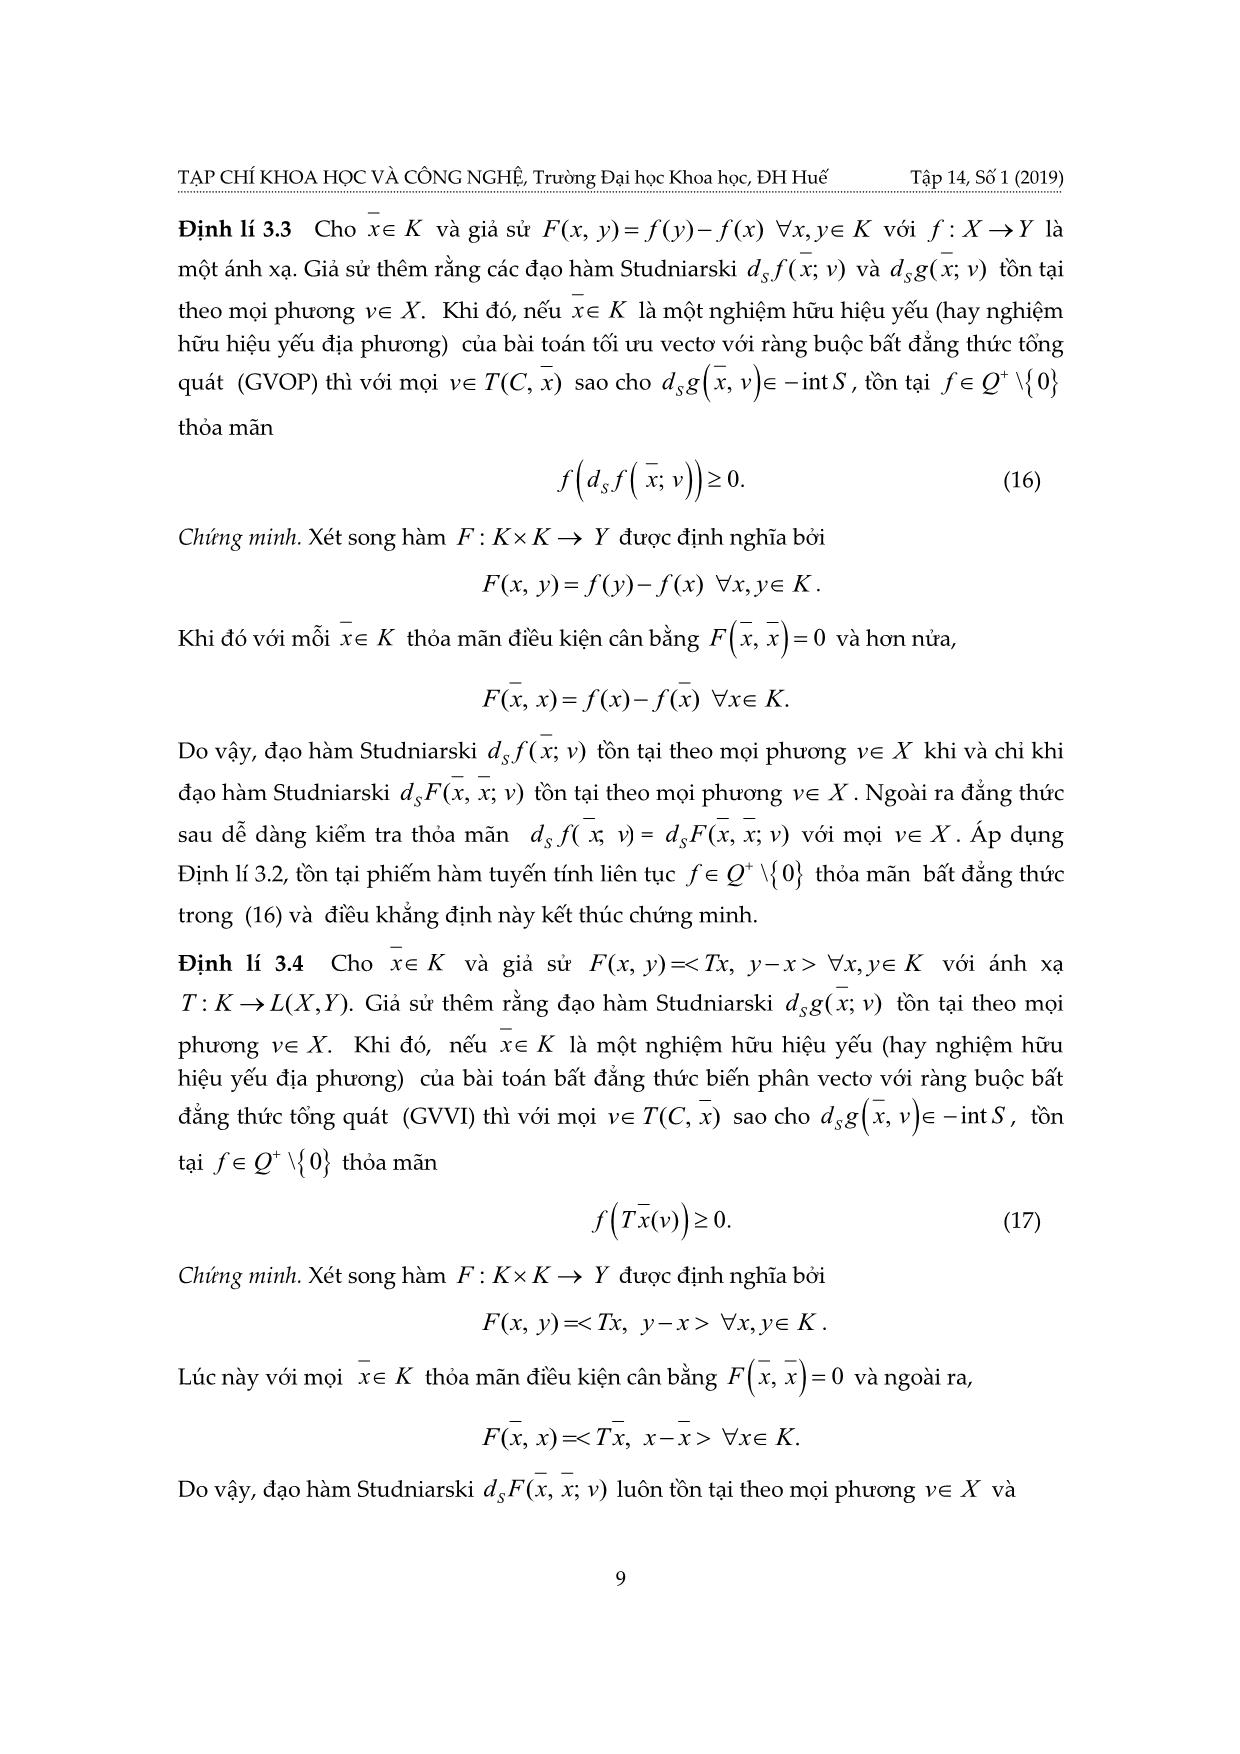 Điều kiện cần hữu hiệu cho nghiệm yếu địa phương của bài toán cân bằng vectơ có ràng buộc bất đẳng thức tổng quát và áp dụng trang 9